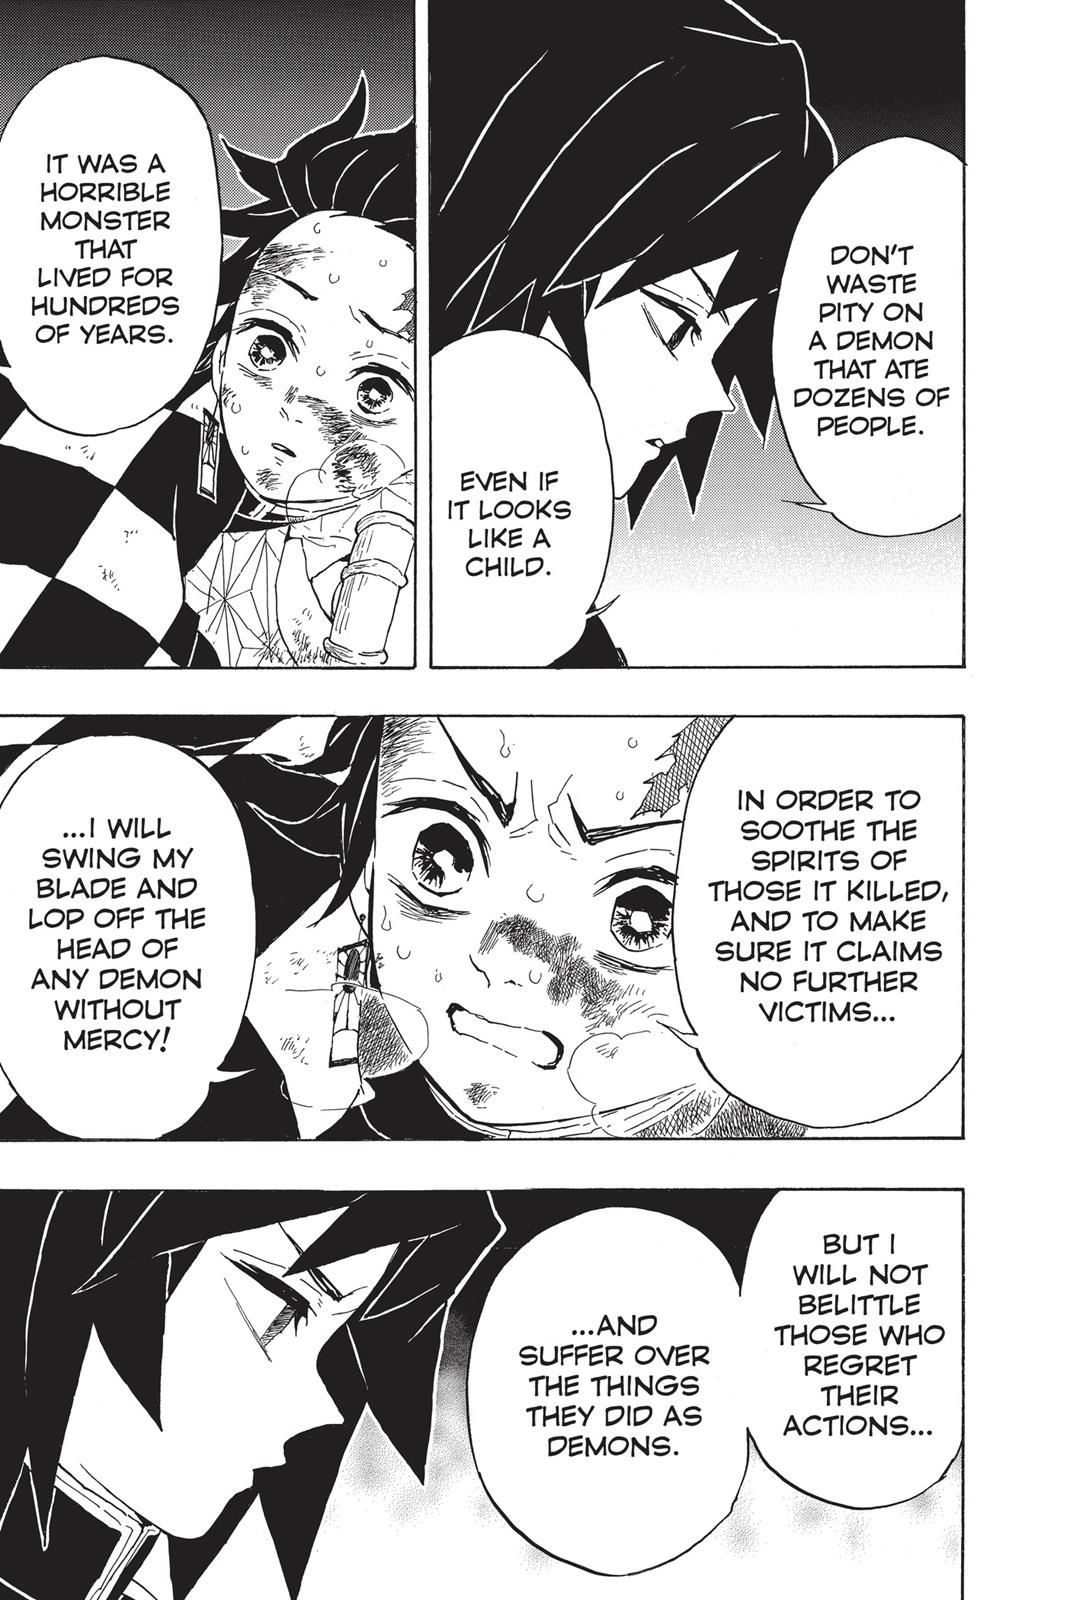 Demon Slayer Manga Manga Chapter - 43 - image 15